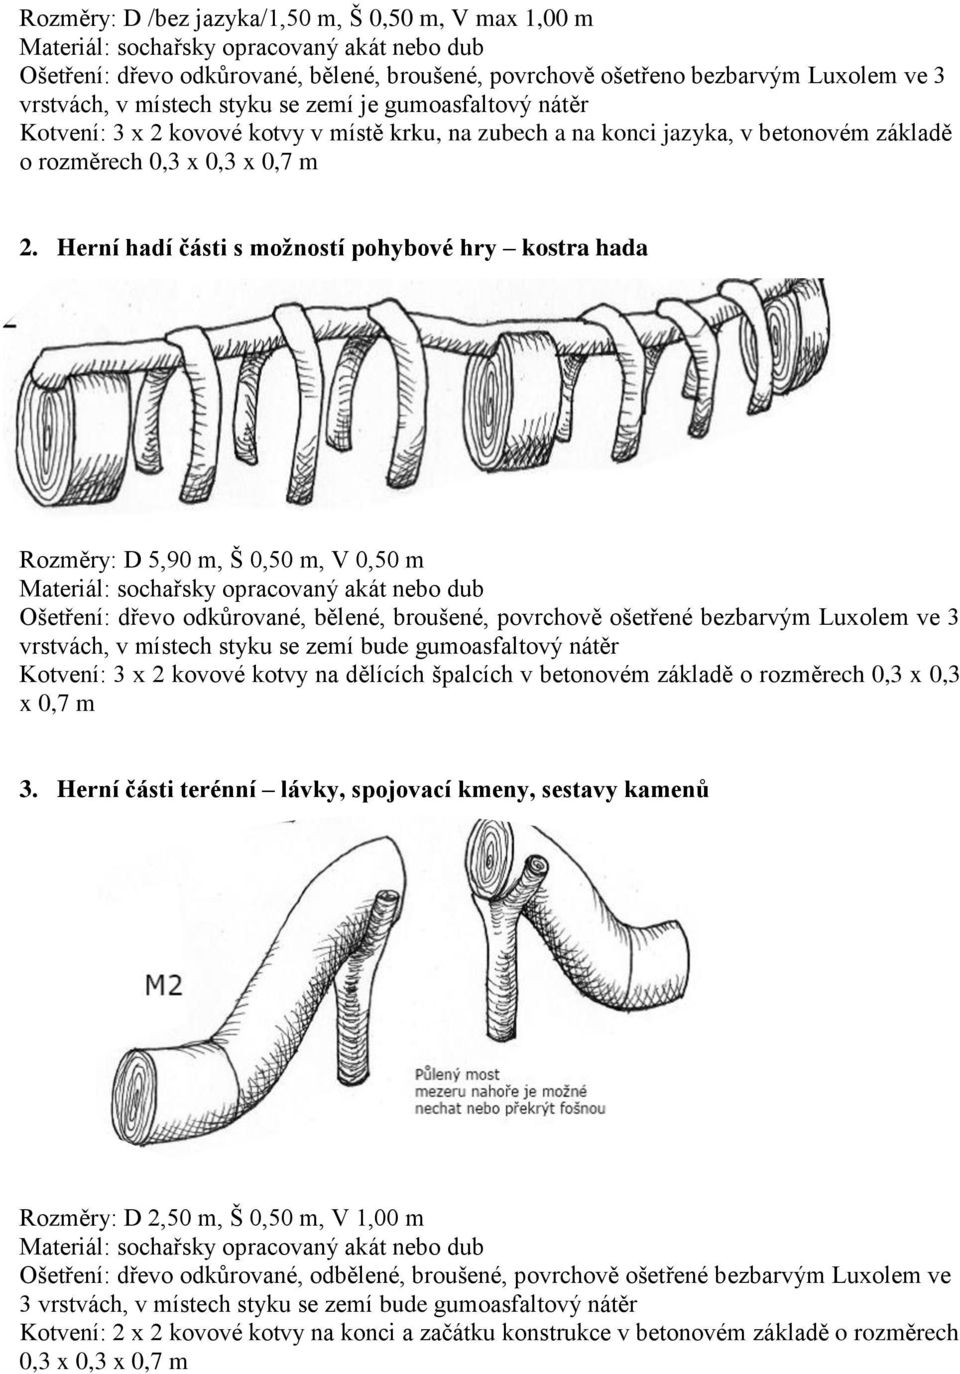 Herní hadí části s možností pohybové hry kostra hada - herní části terénní lávky, spojovací kmeny, sestavy kamenů Rozměry: D 5,90 m, Š 0,50 m, V 0,50 m Kotvení: 3 x 2 kovové kotvy na